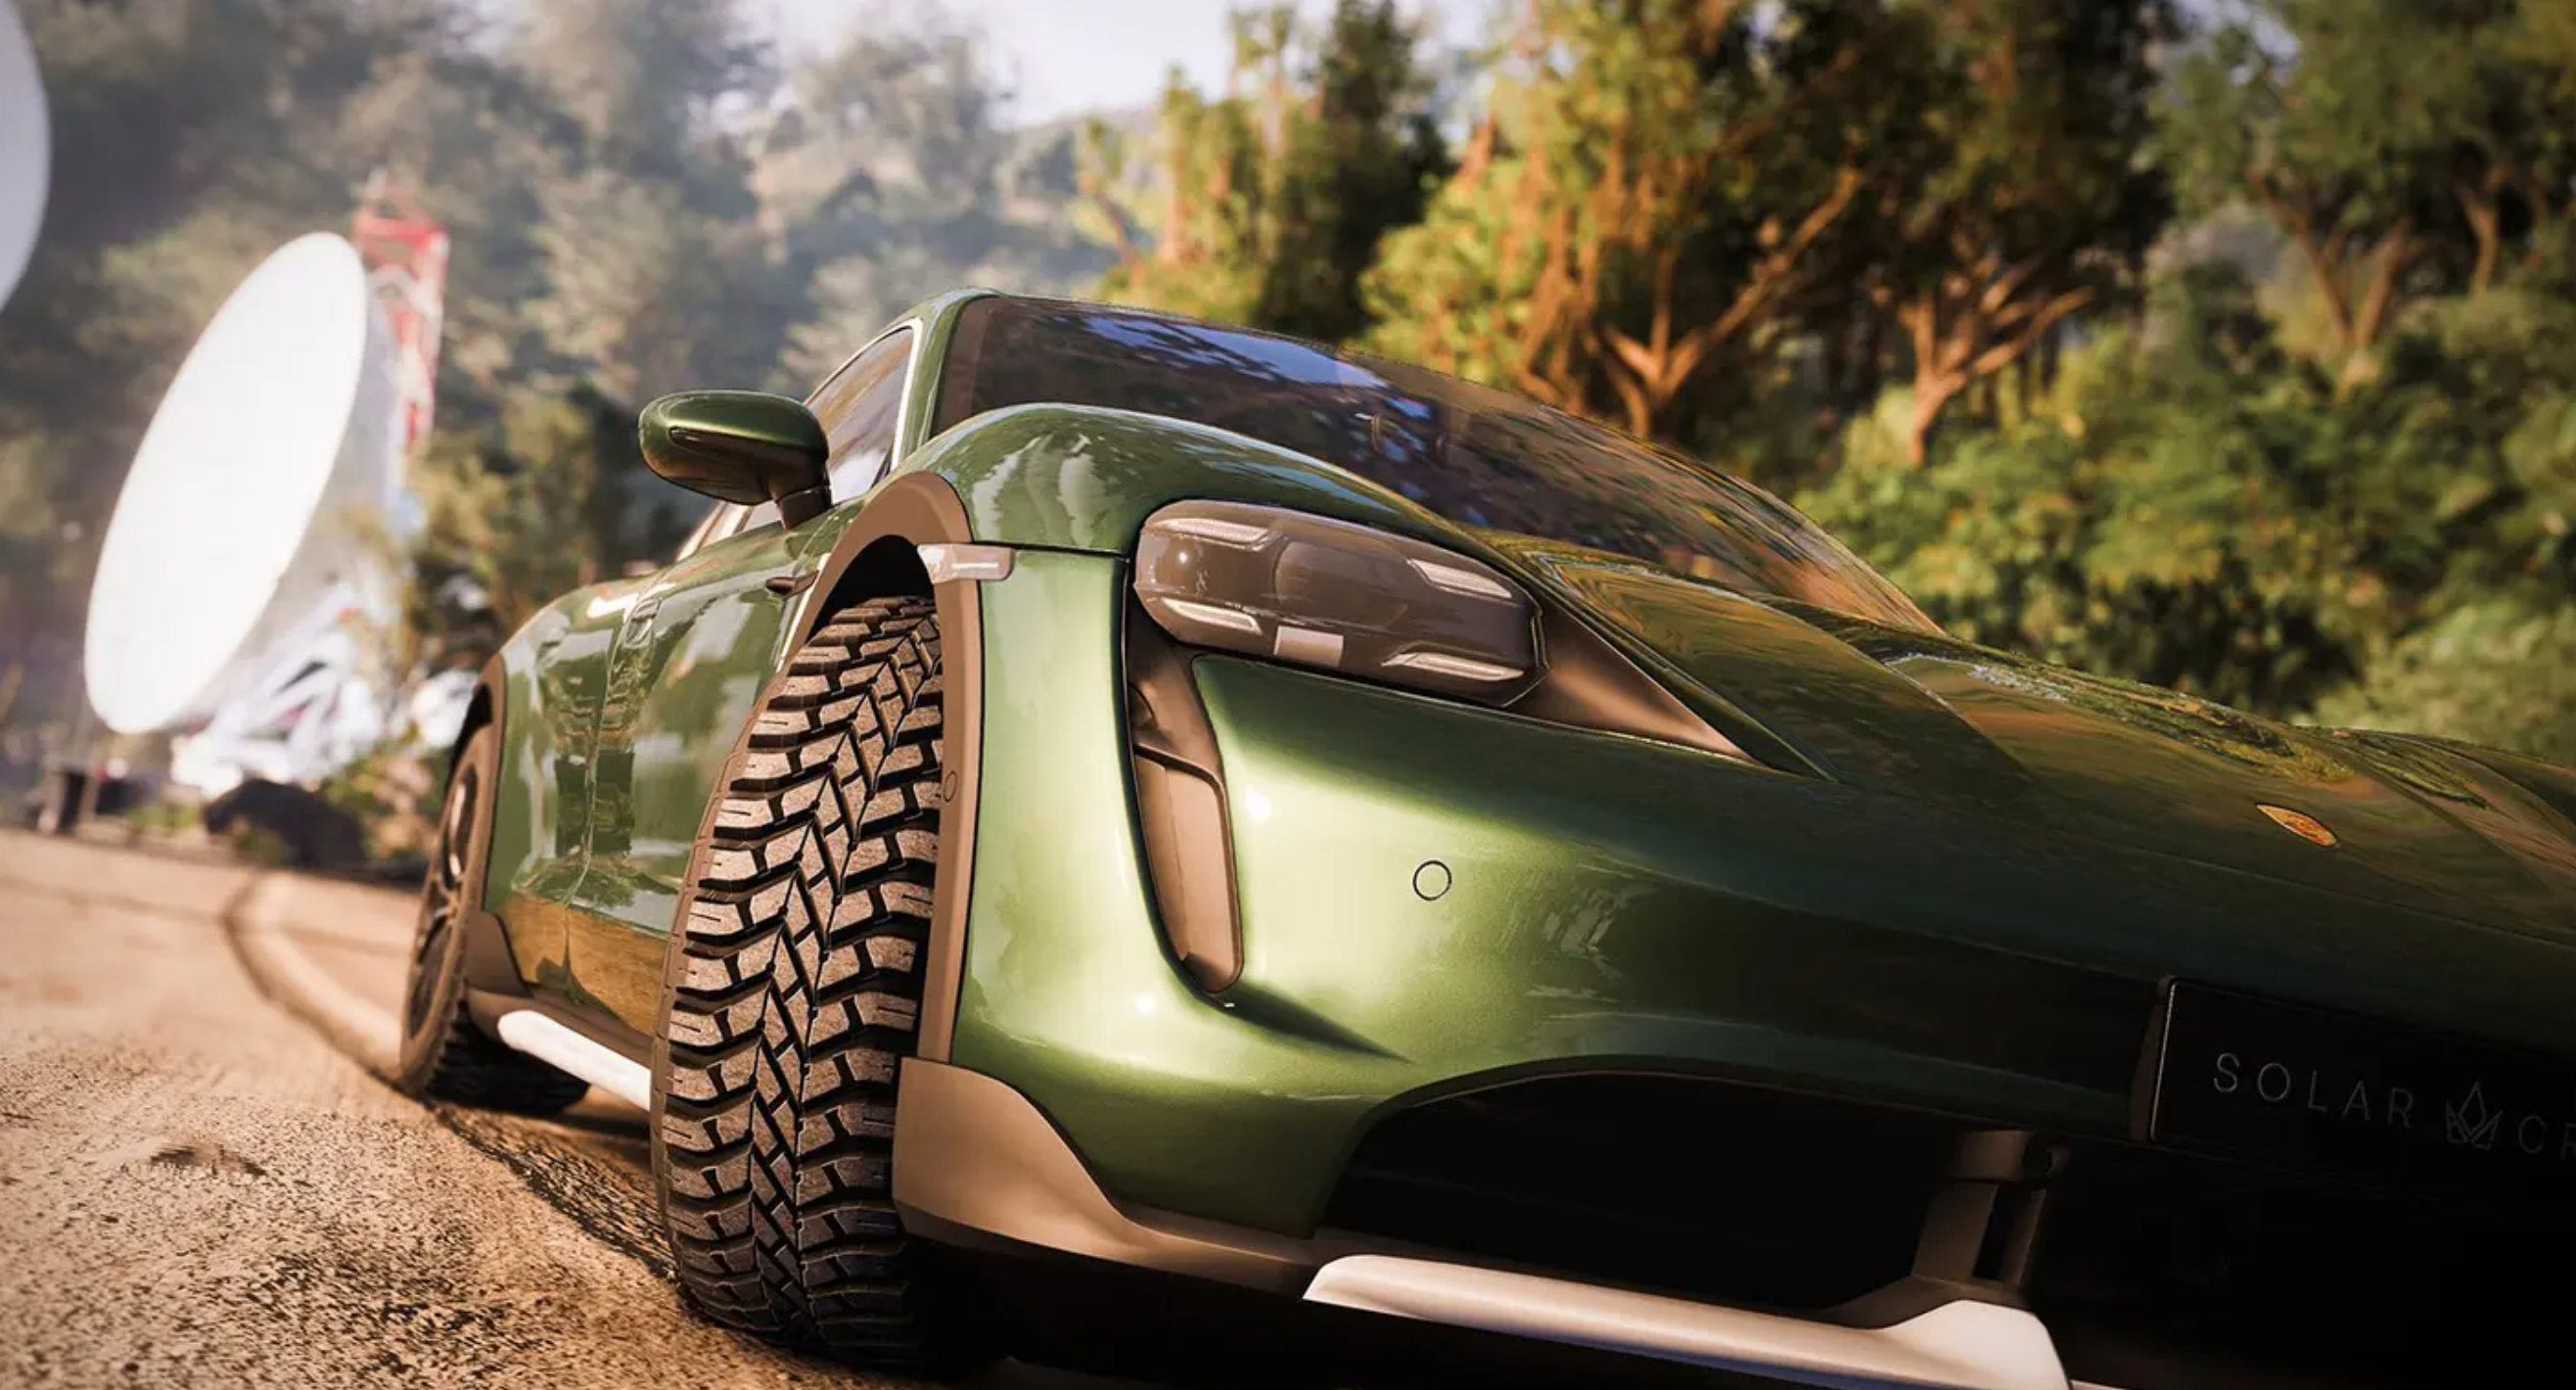 Test Drive Unlimited : le concurrent de Forza et Gran Turismo fait une grande annonce